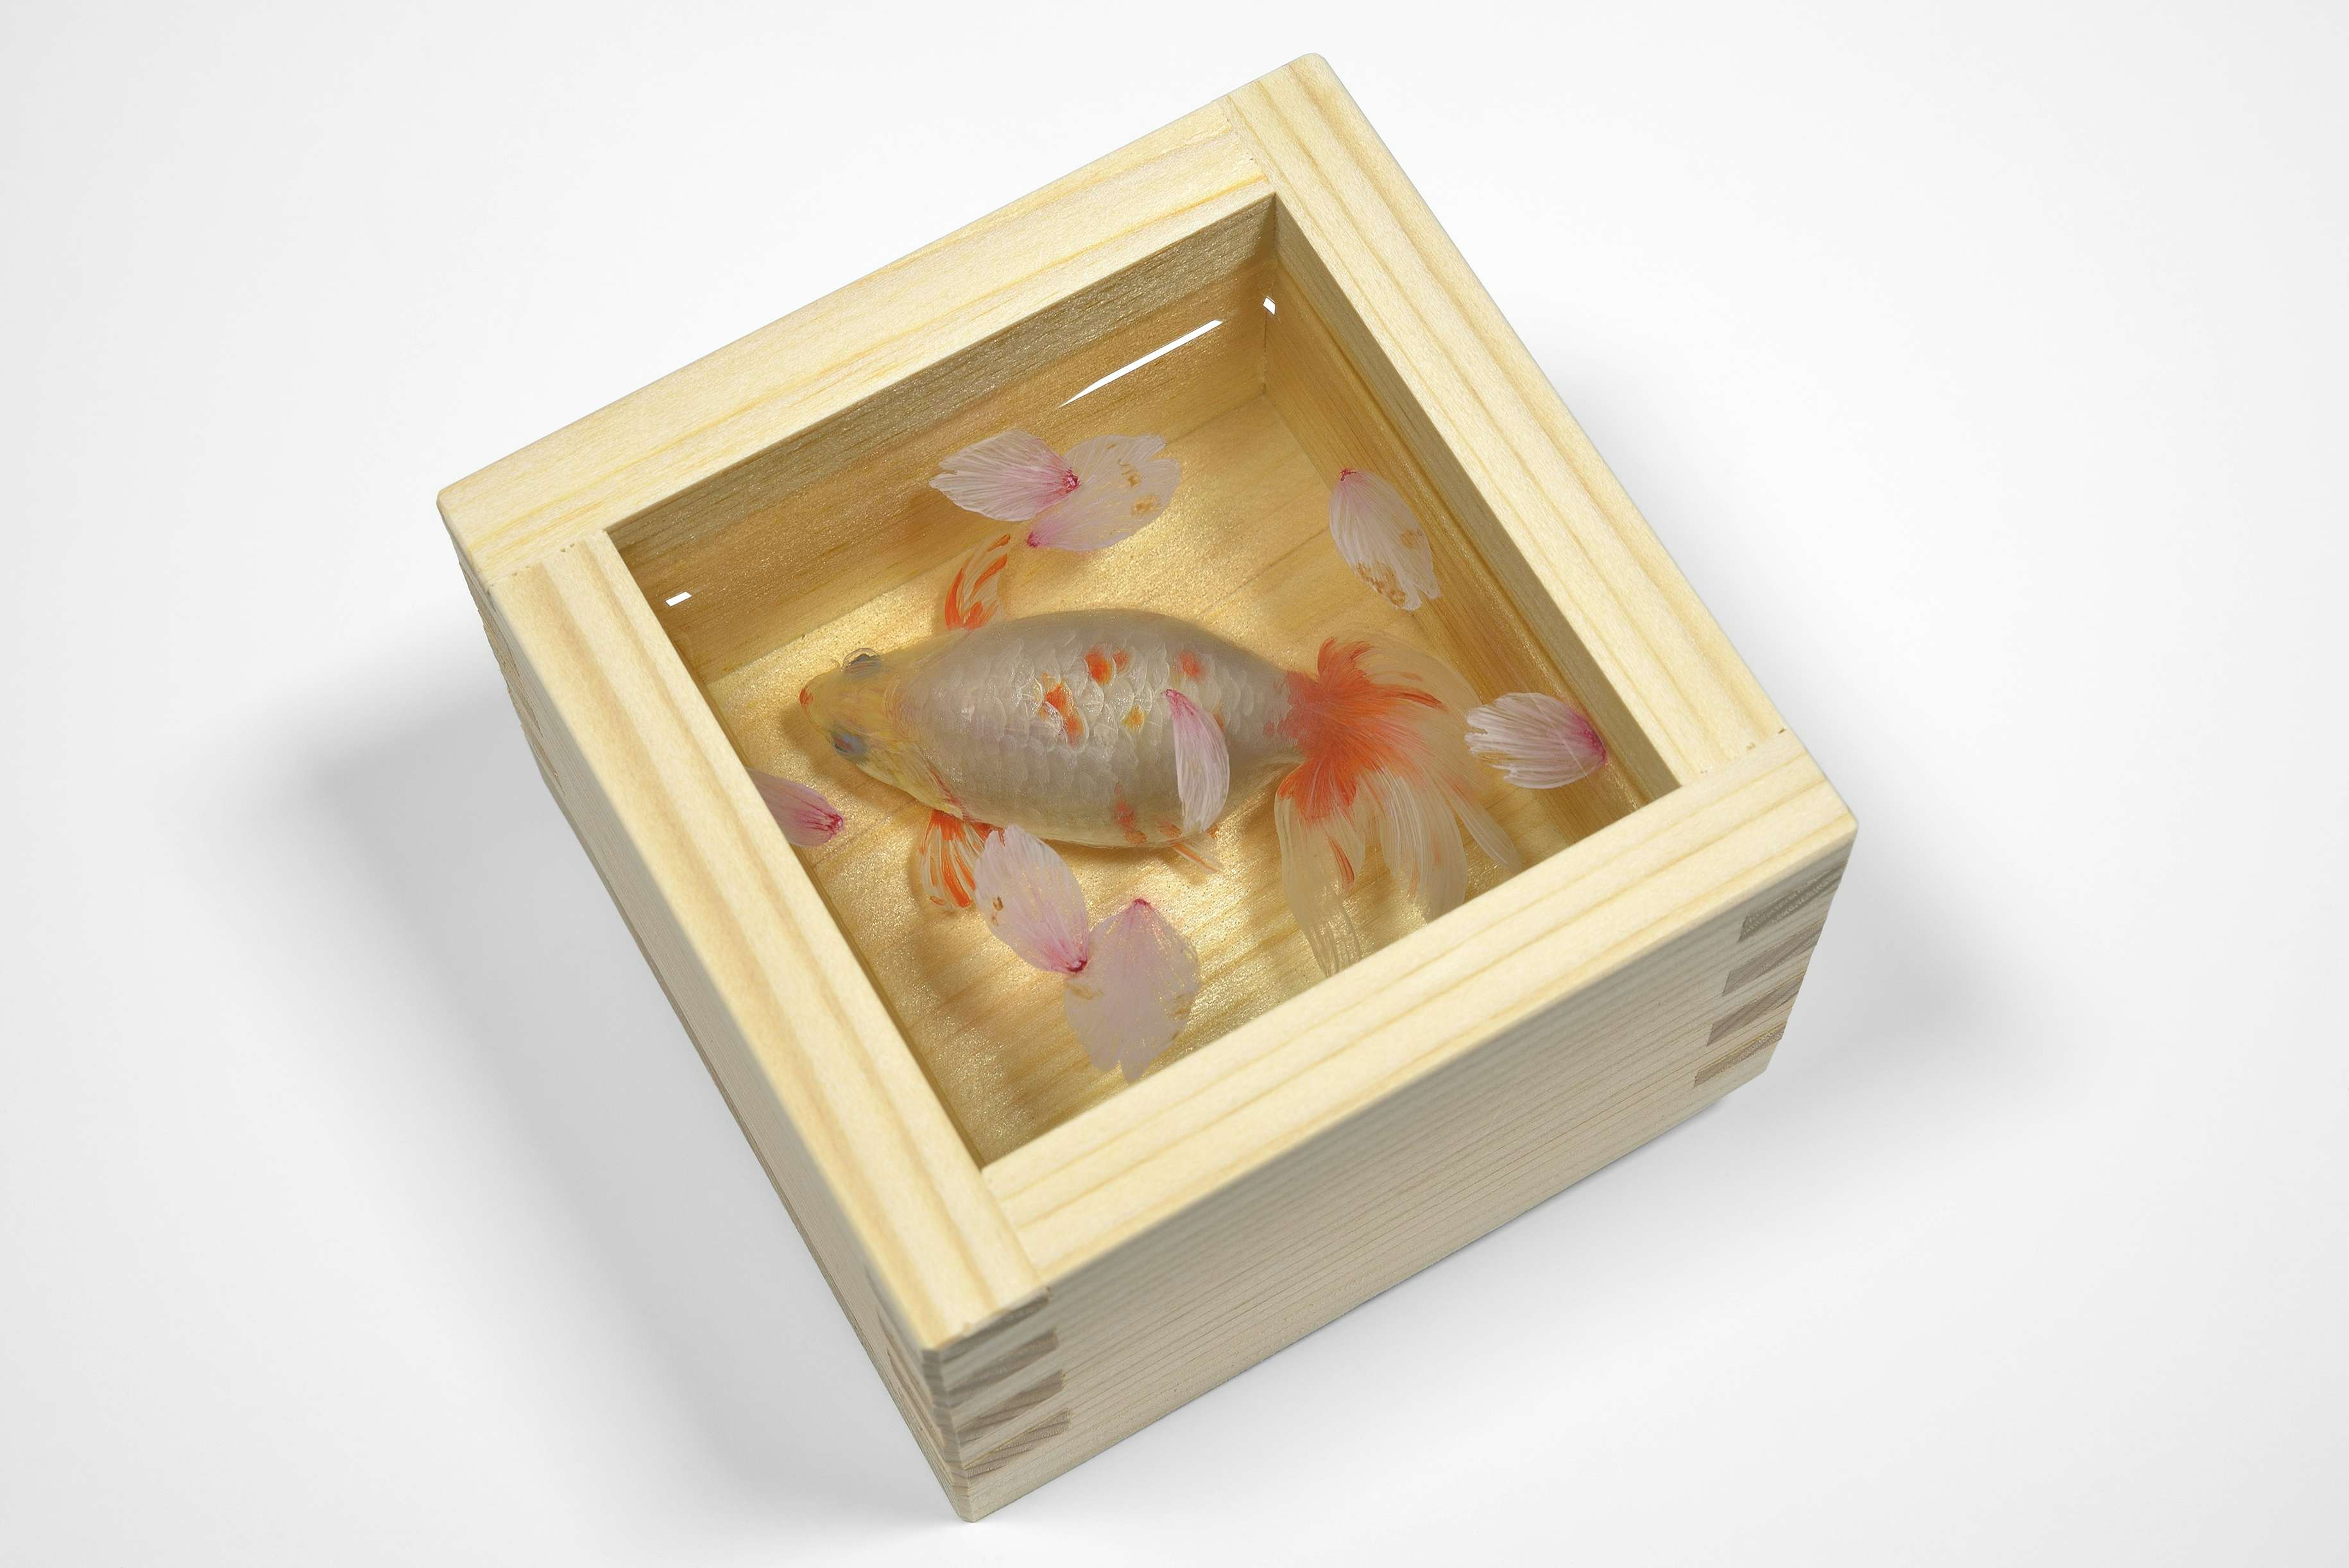 深堀隆介展「金魚鉢、地球鉢。」が上野の森美術館で開催へ。約300点の